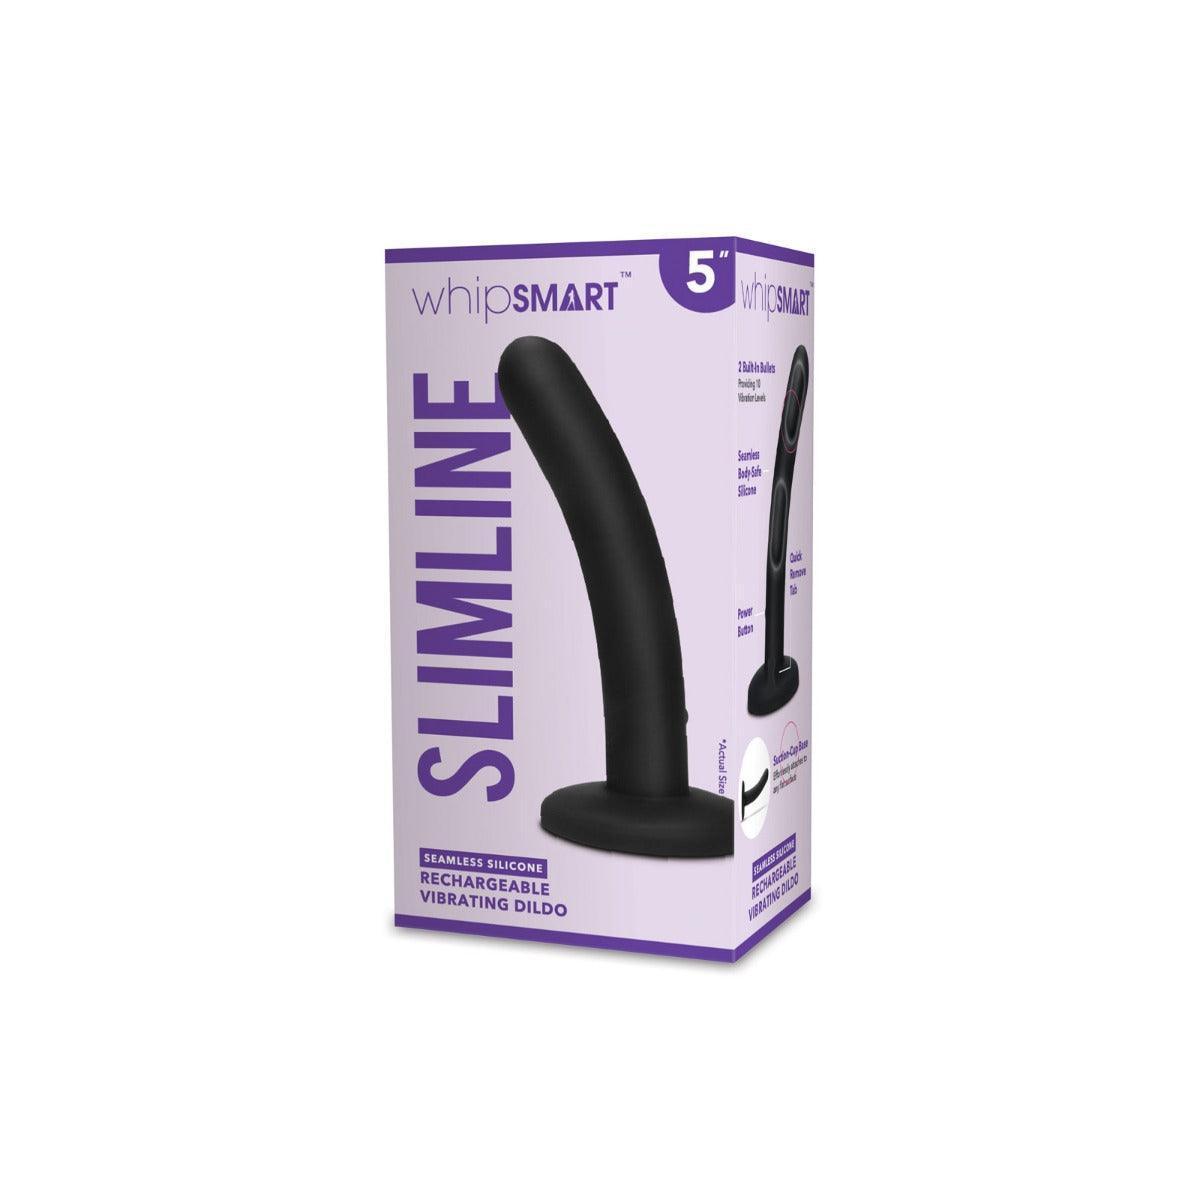 Whipsmart 5 inch Rechargeable Slimline Vibrating Dildo - Black